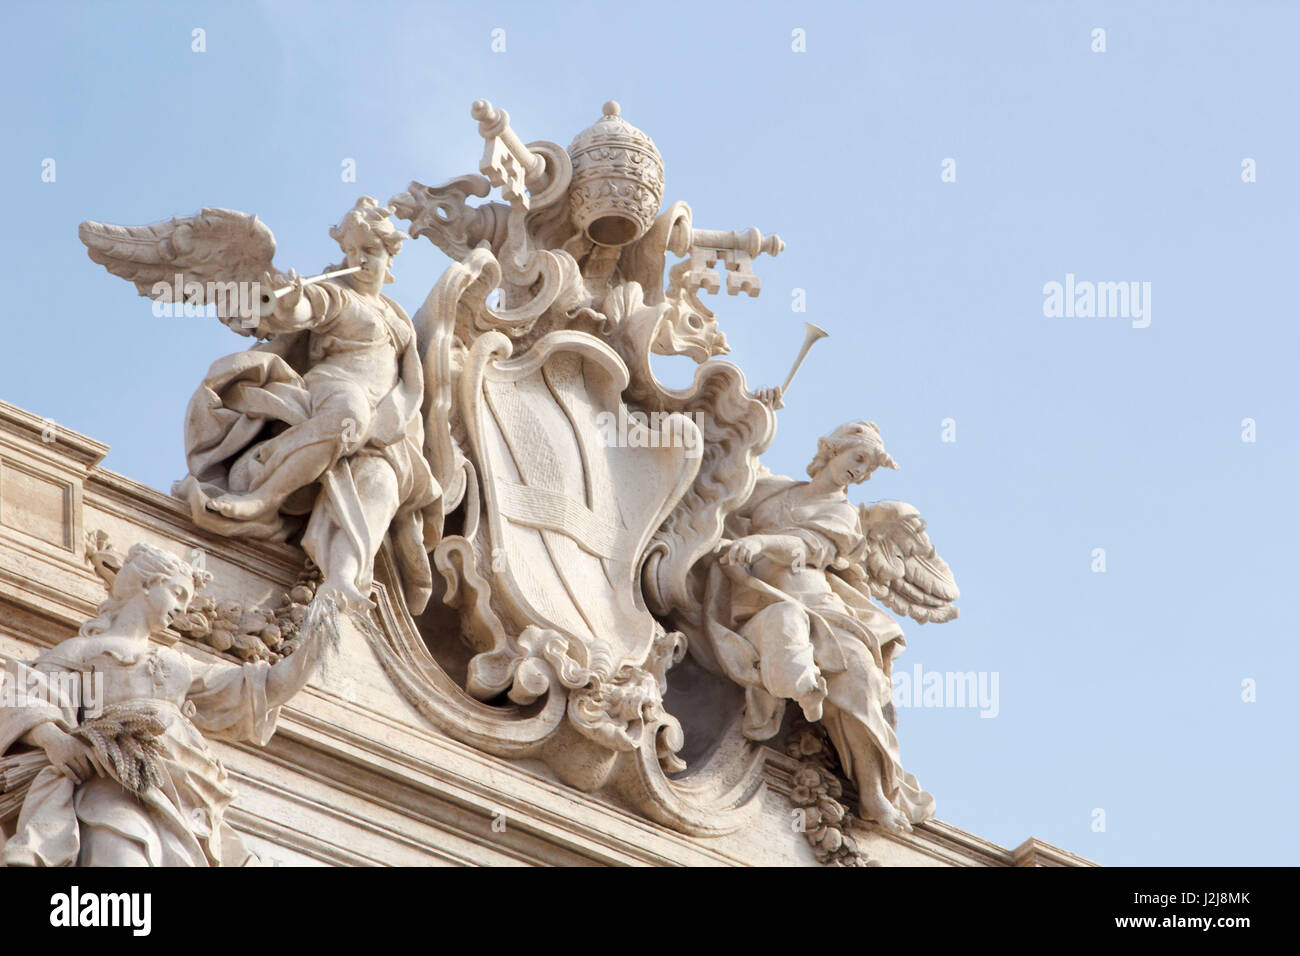 A statue over a door entrance in Verona, Italy Stock Photo